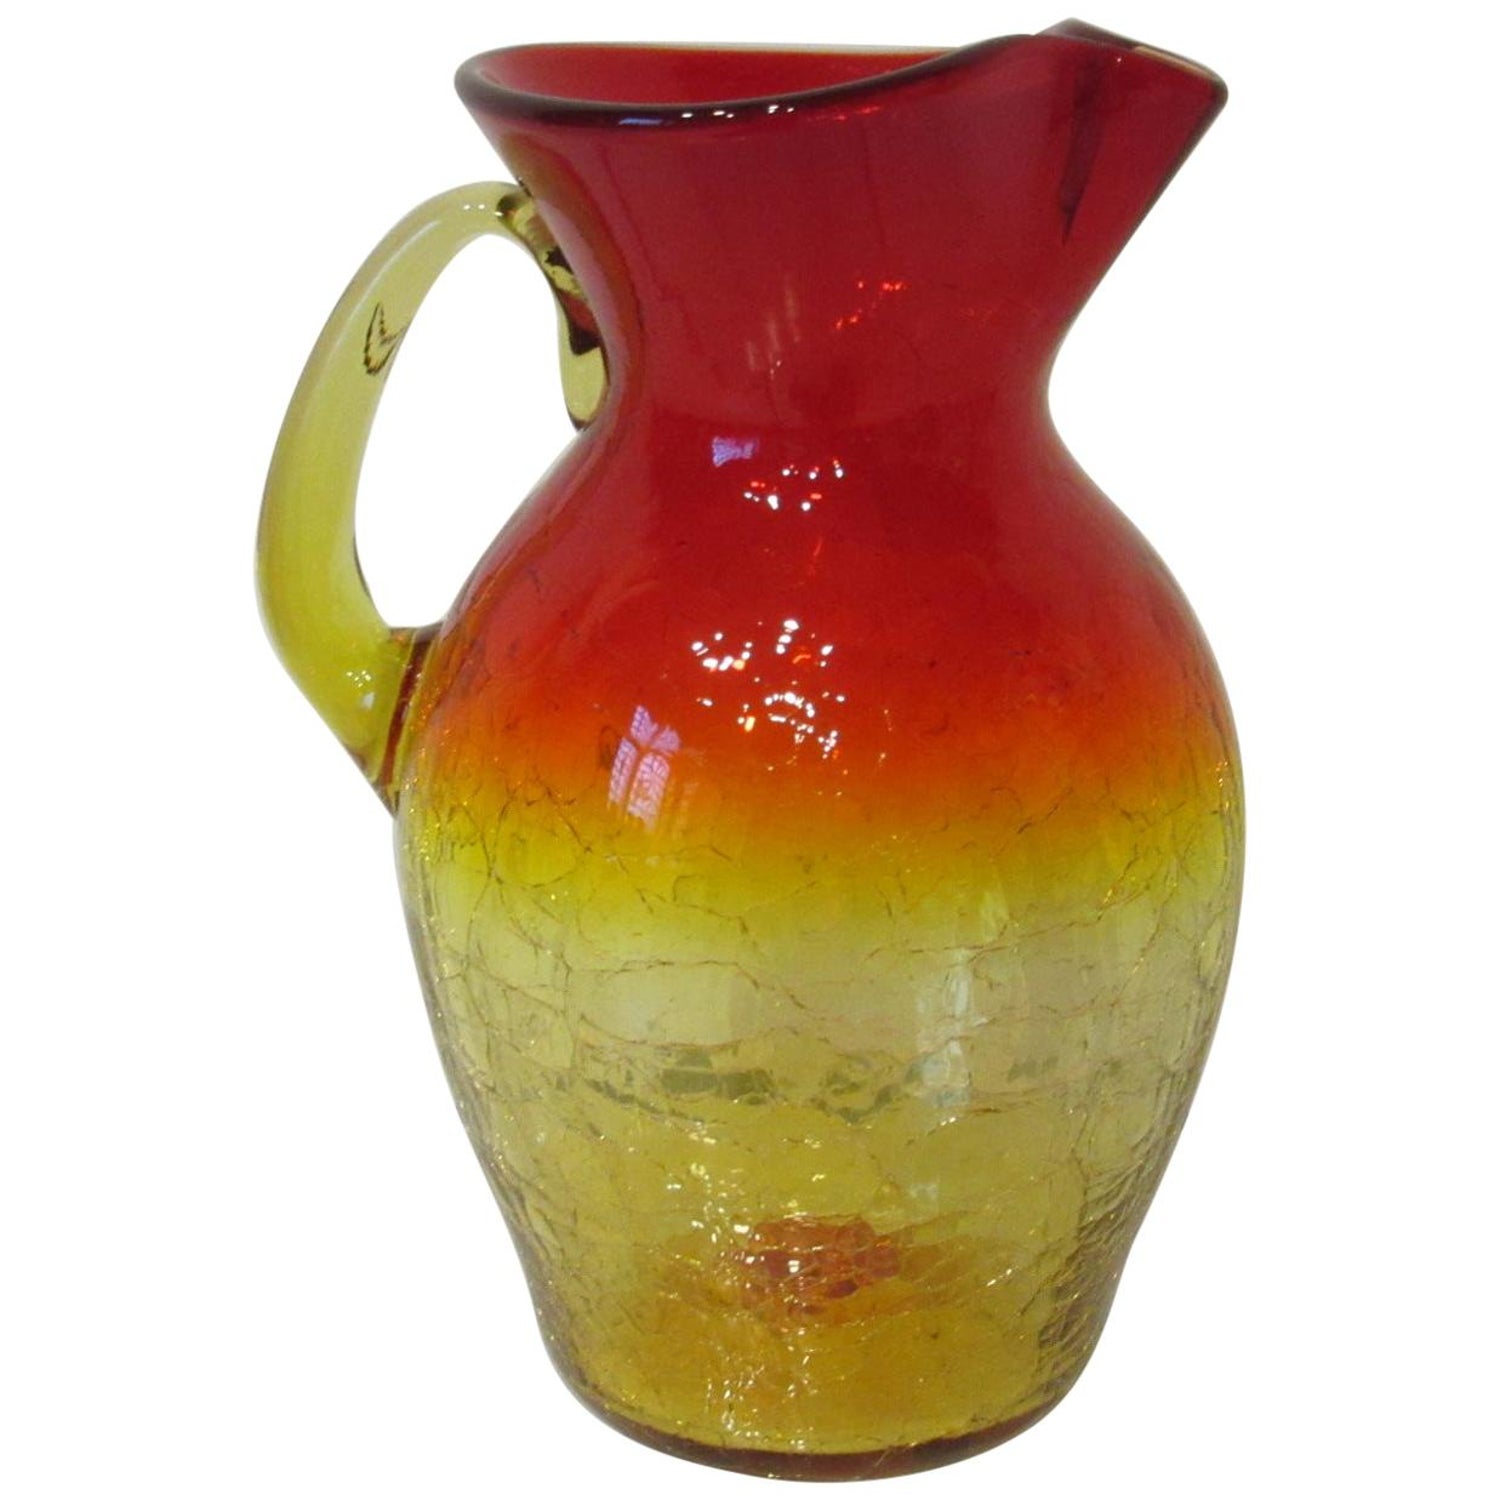 https://a.1stdibscdn.com/large-blenko-crackle-pitcher-by-wayne-husted-for-sale/1121189/f_220131021610041907828/22013102_master.jpg?width=1500